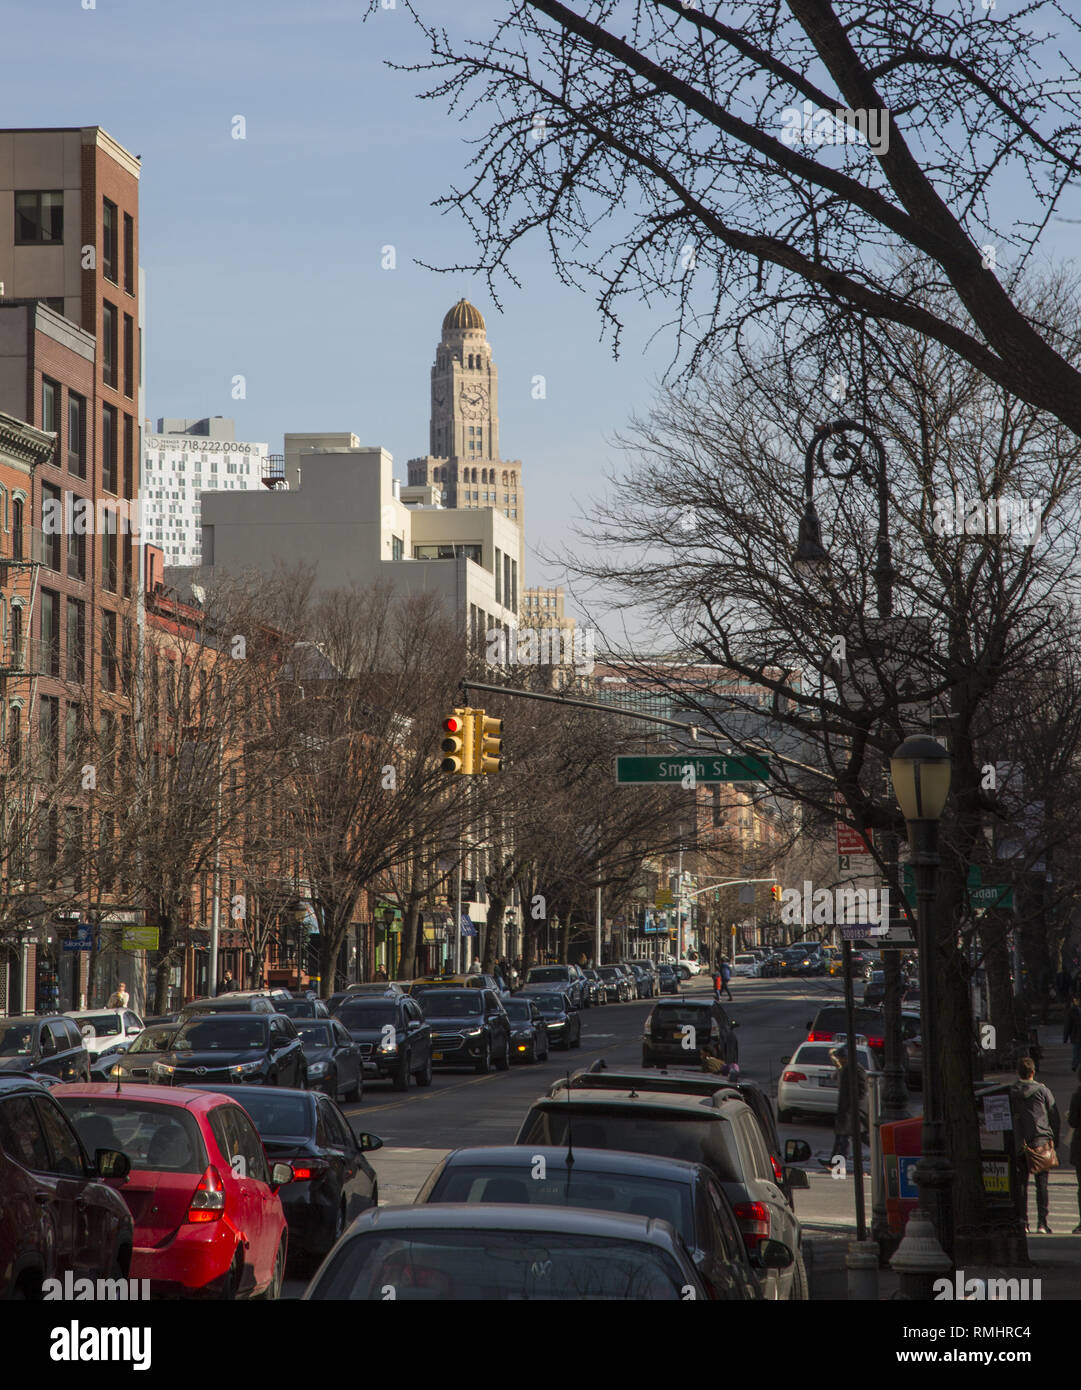 Mirando hacia el este hacia abajo en la calle Schermerhorn Boerum Hill barrio de Brooklyn, NY con la icónica Williamsburg Savings Bank torre del reloj asomándose en el fondo. Foto de stock